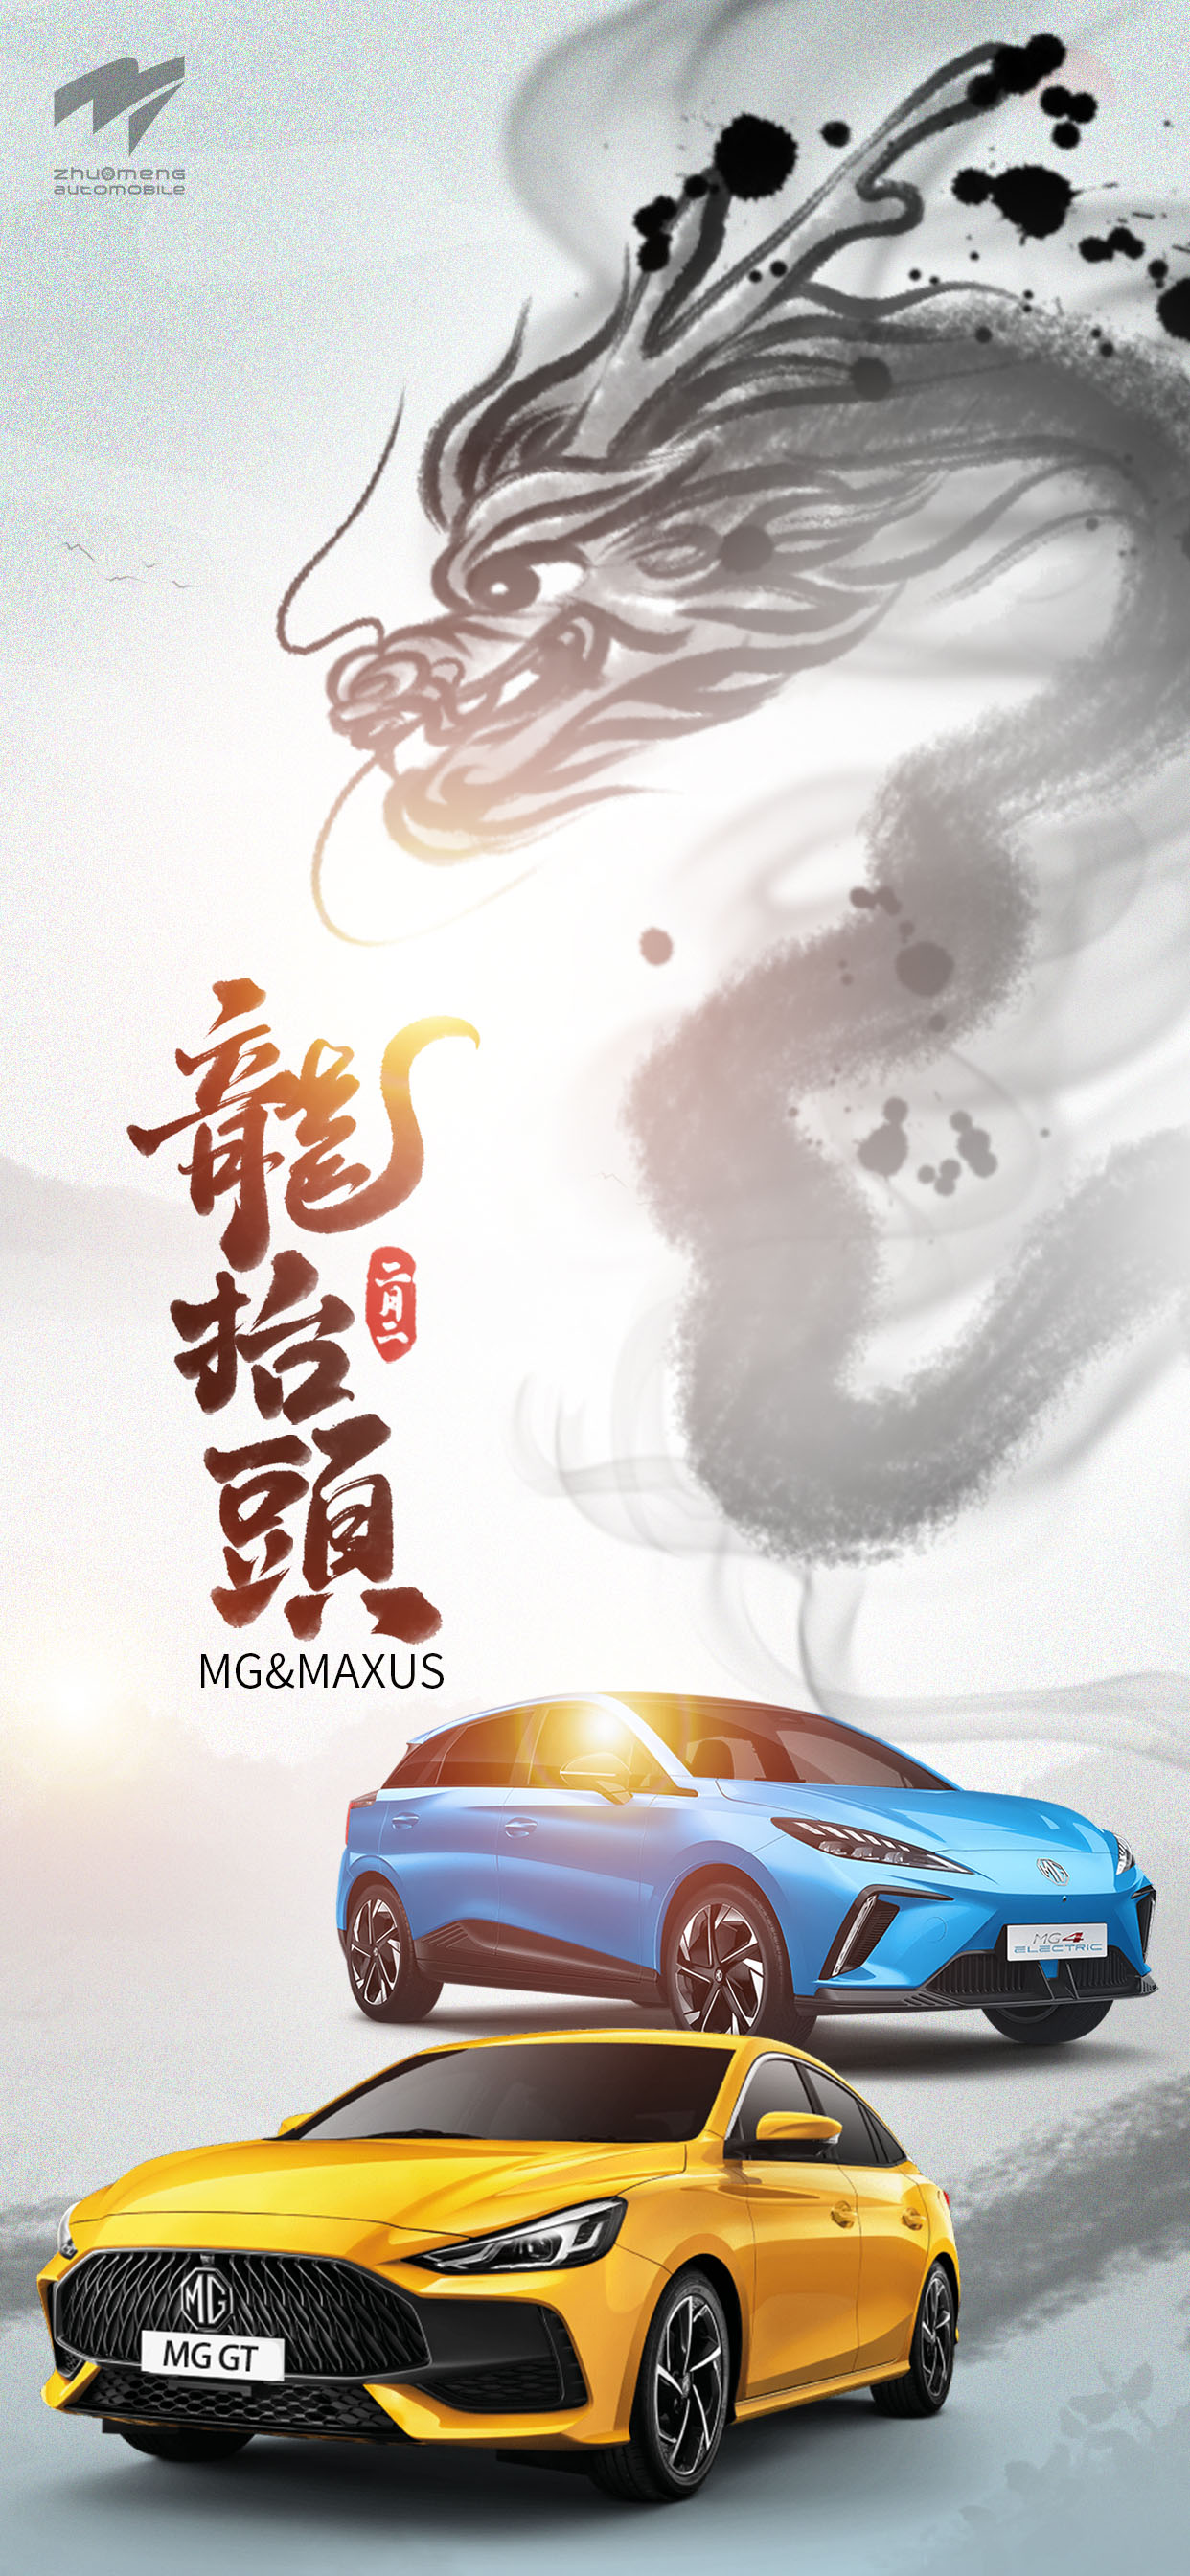 Zhuo Meng （Xangai） Automobile Co., Ltd. Dragon Head (2 de febrer del calendari lunar)